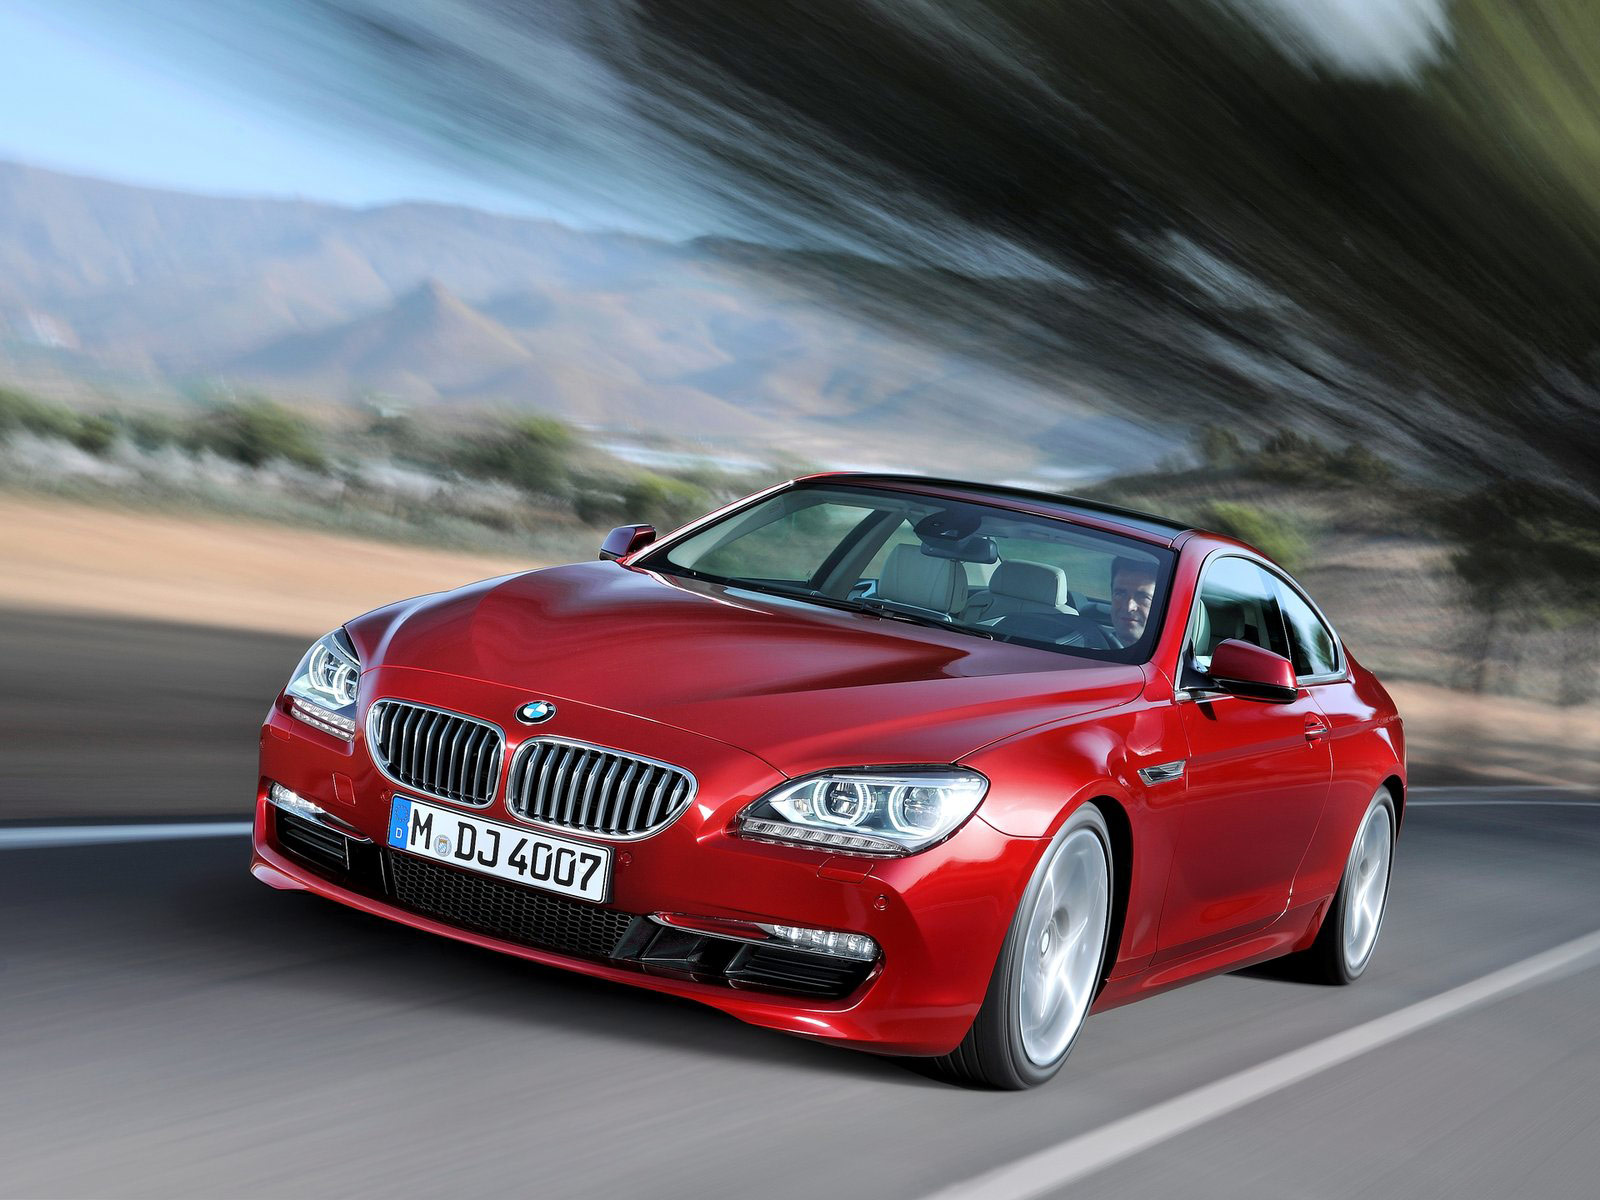 Harga Mobil BMW 2013 Terbaru ~ Motor Model Terbaru